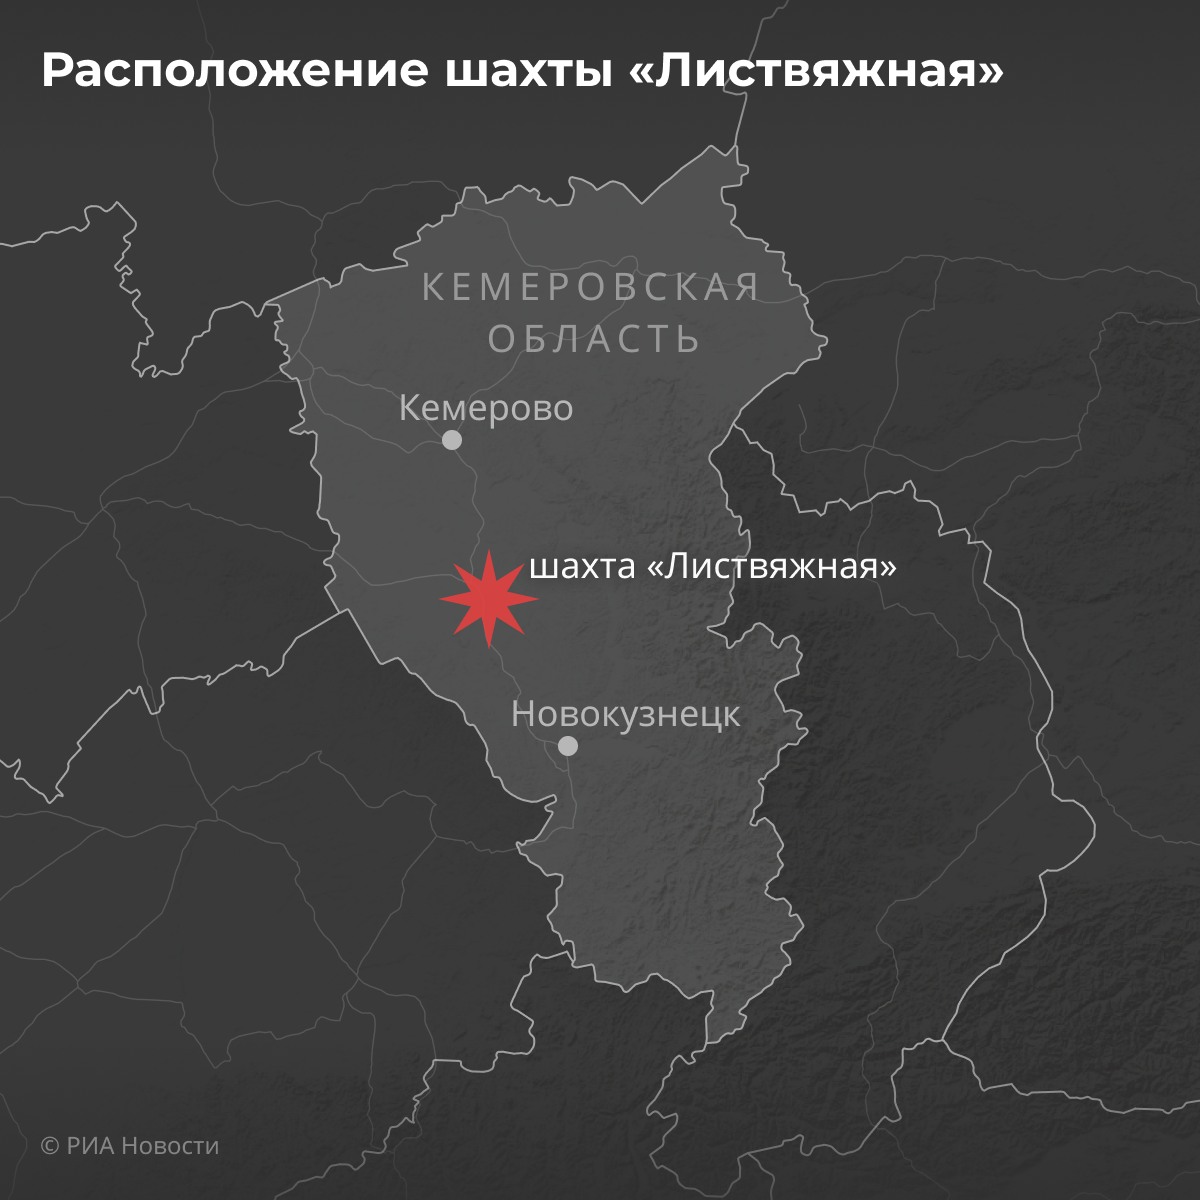 Белово на карте. Шахты Кемеровской области на карте. Шахта Листвяжная на карте. Карта шахт Кемеровской области. Шахта Листвяжная логотип.